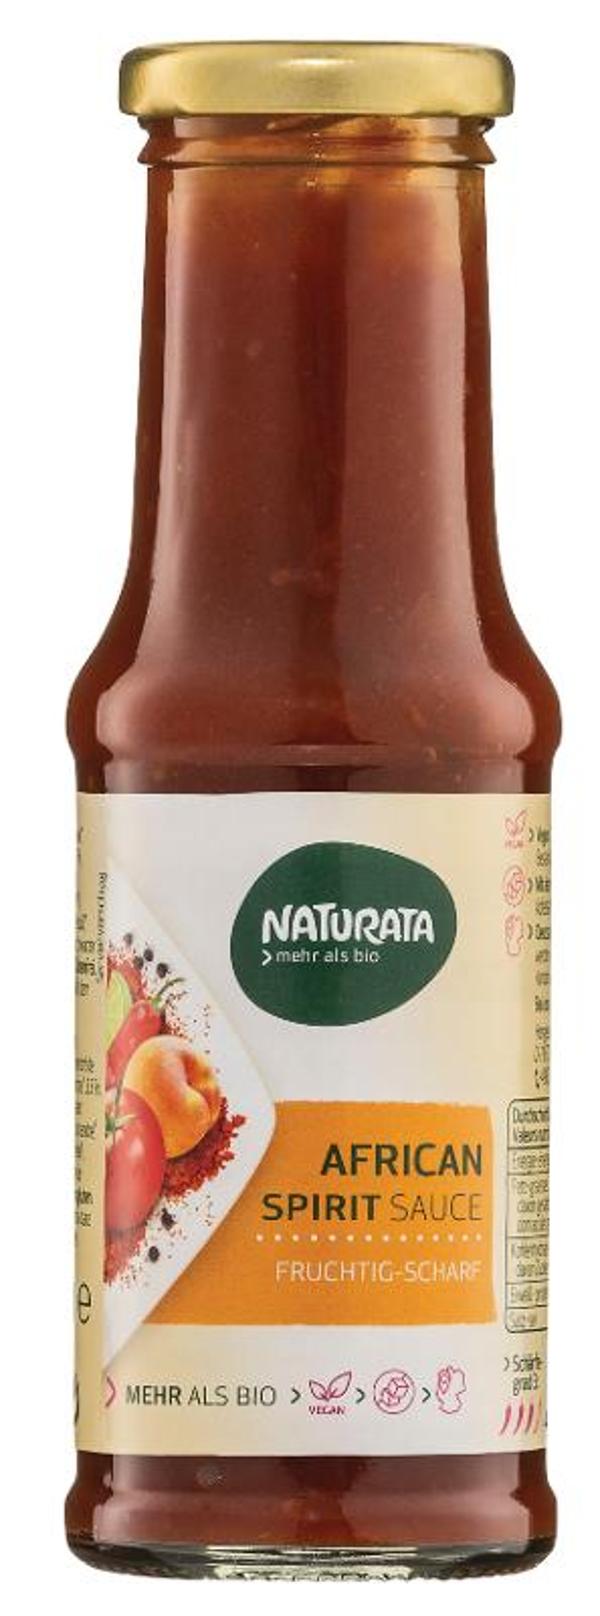 Produktfoto zu African-Spirit Sauce